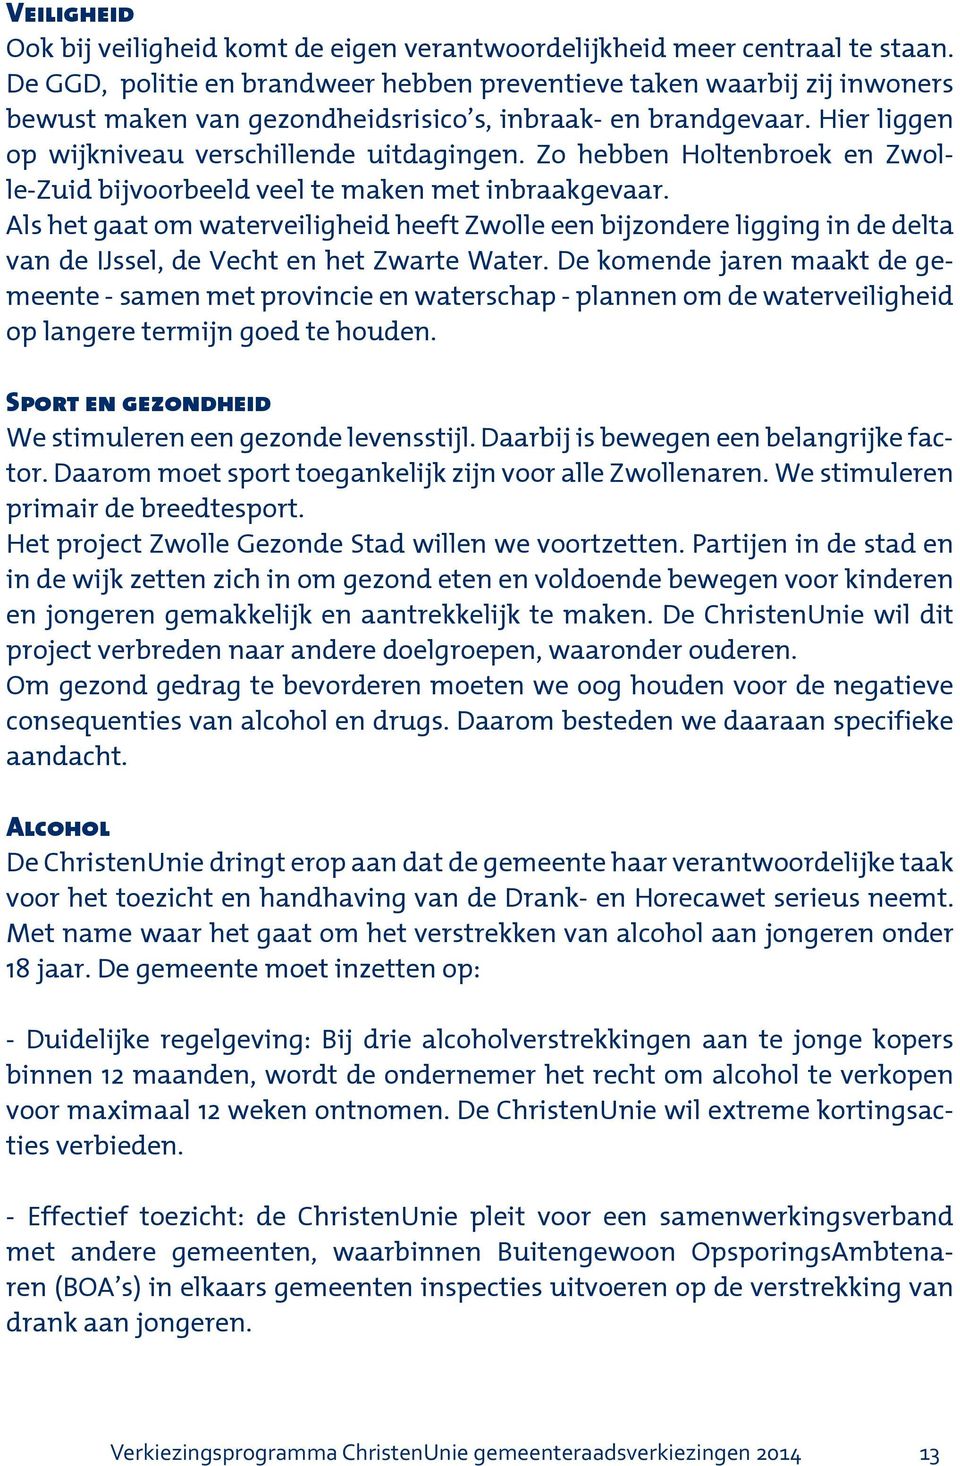 Zo hebben Holtenbroek en Zwolle-Zuid bijvoorbeeld veel te maken met inbraakgevaar.